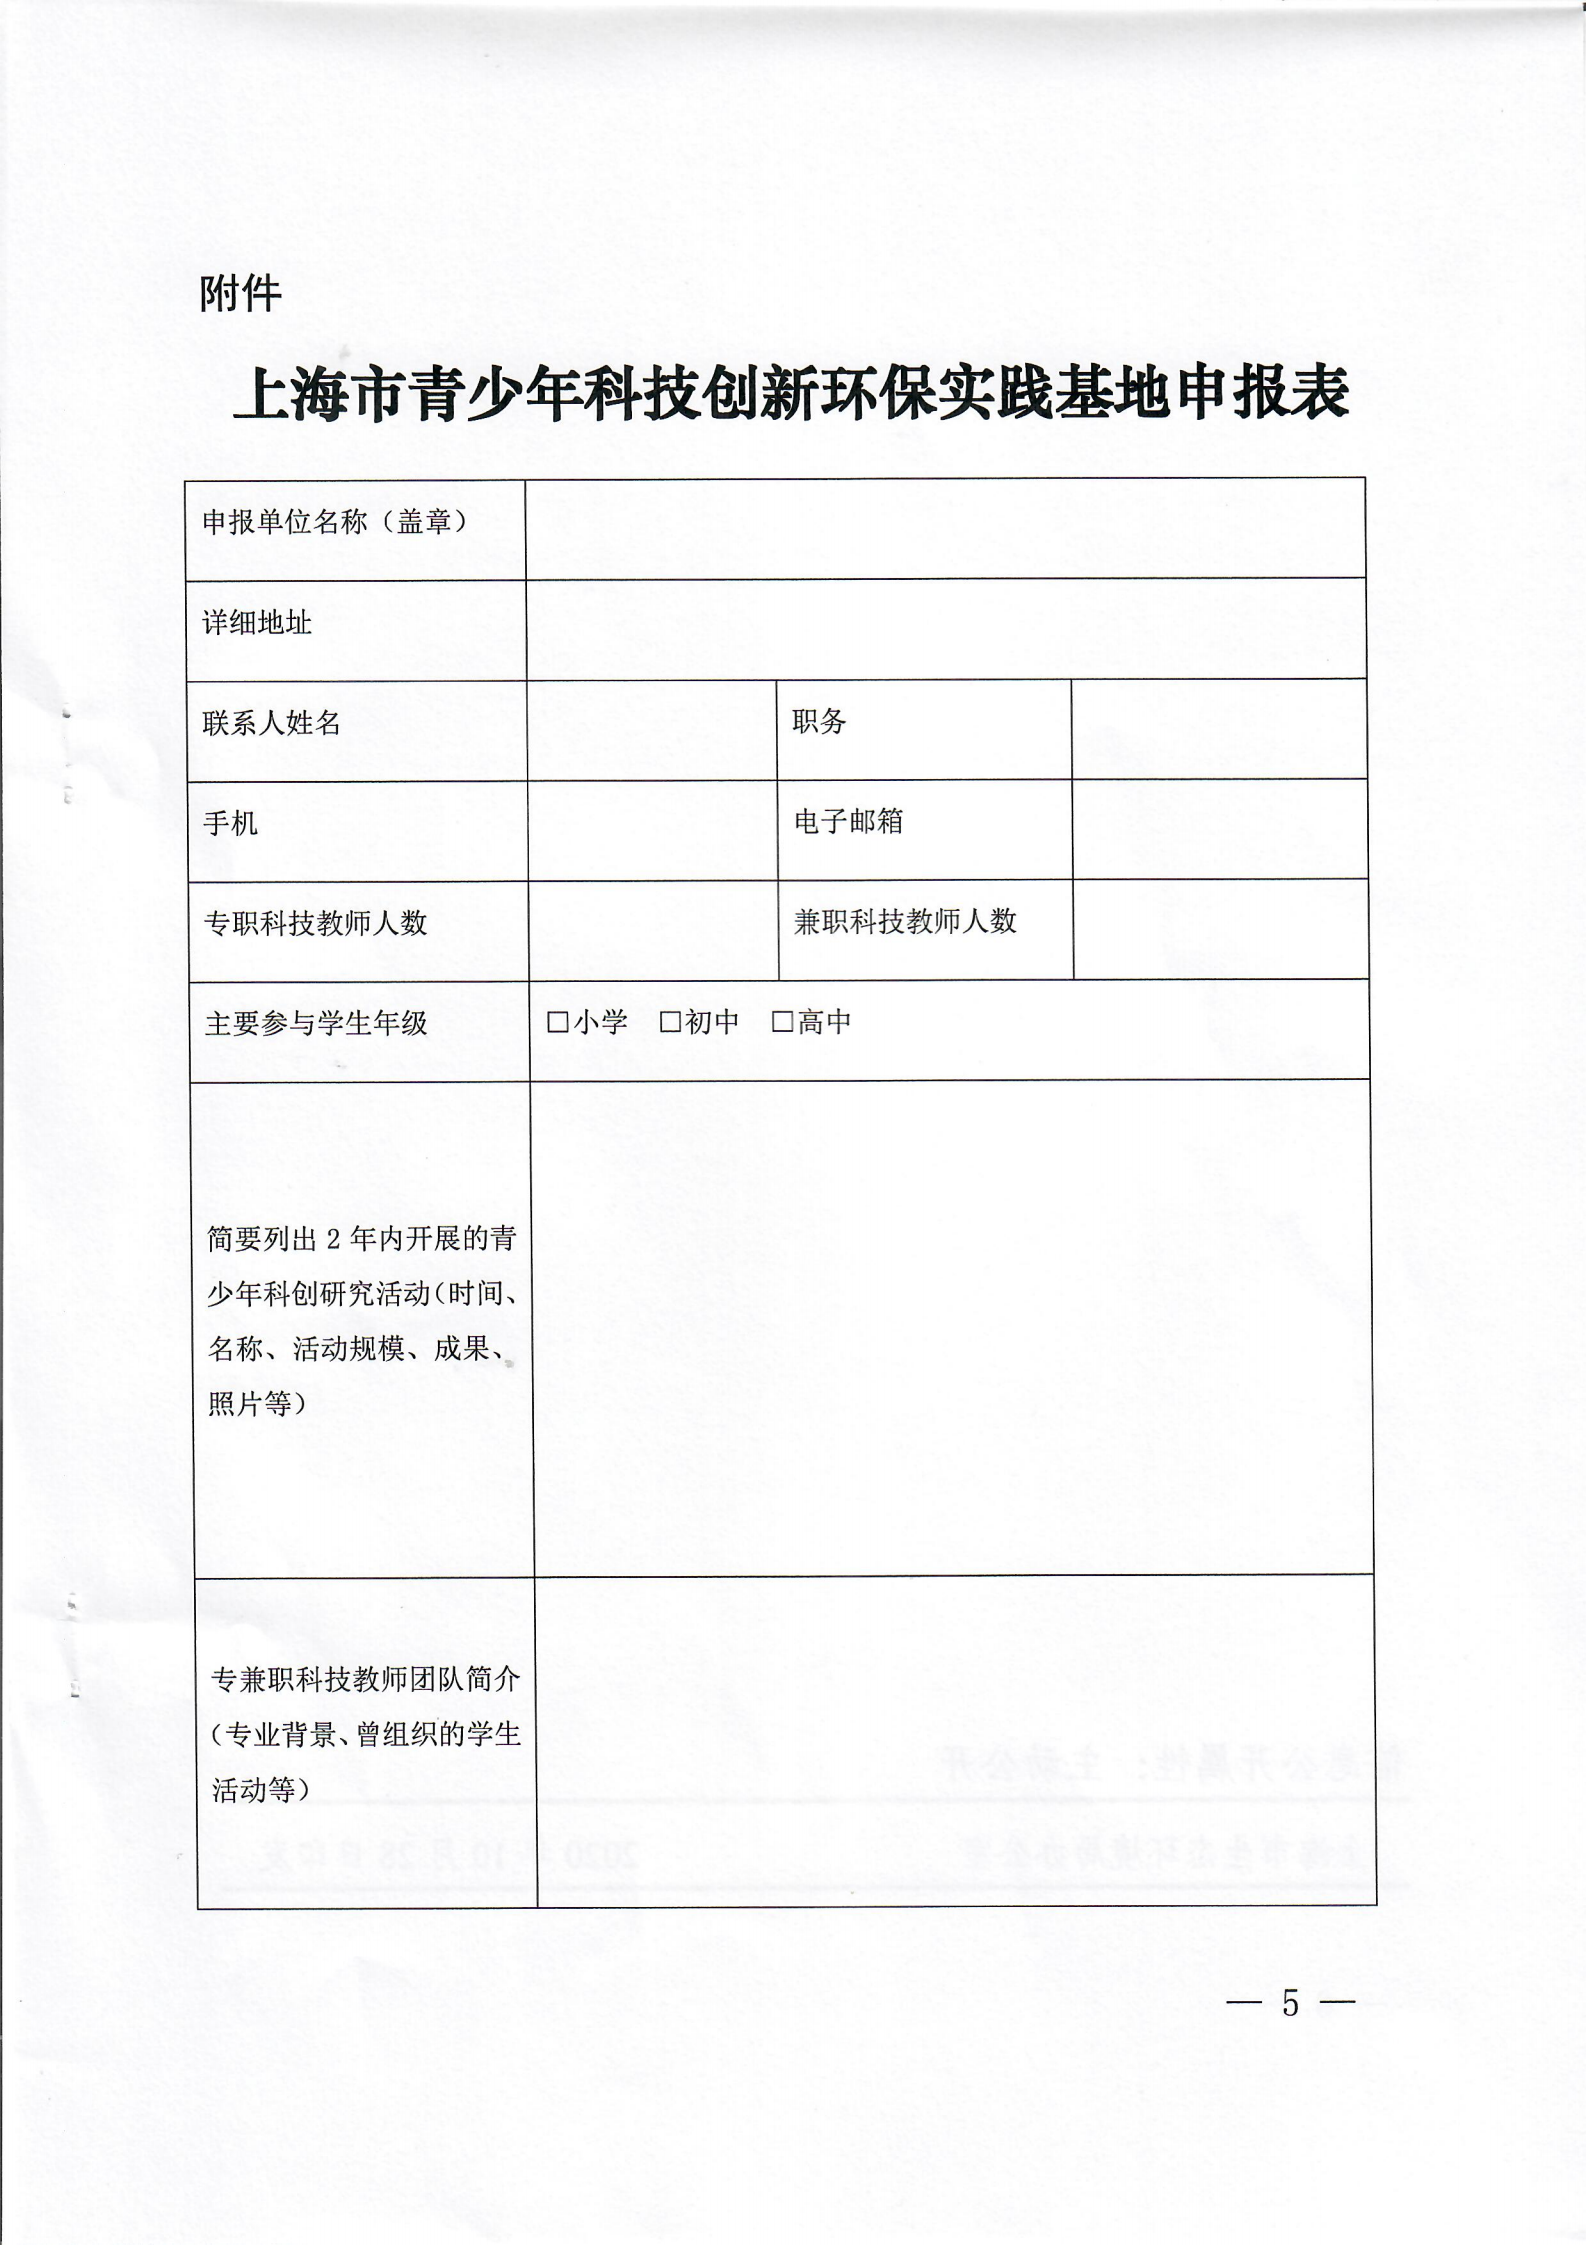 关于申报上海市青少年科技创新环保实践基地的通知扫描版_04.png